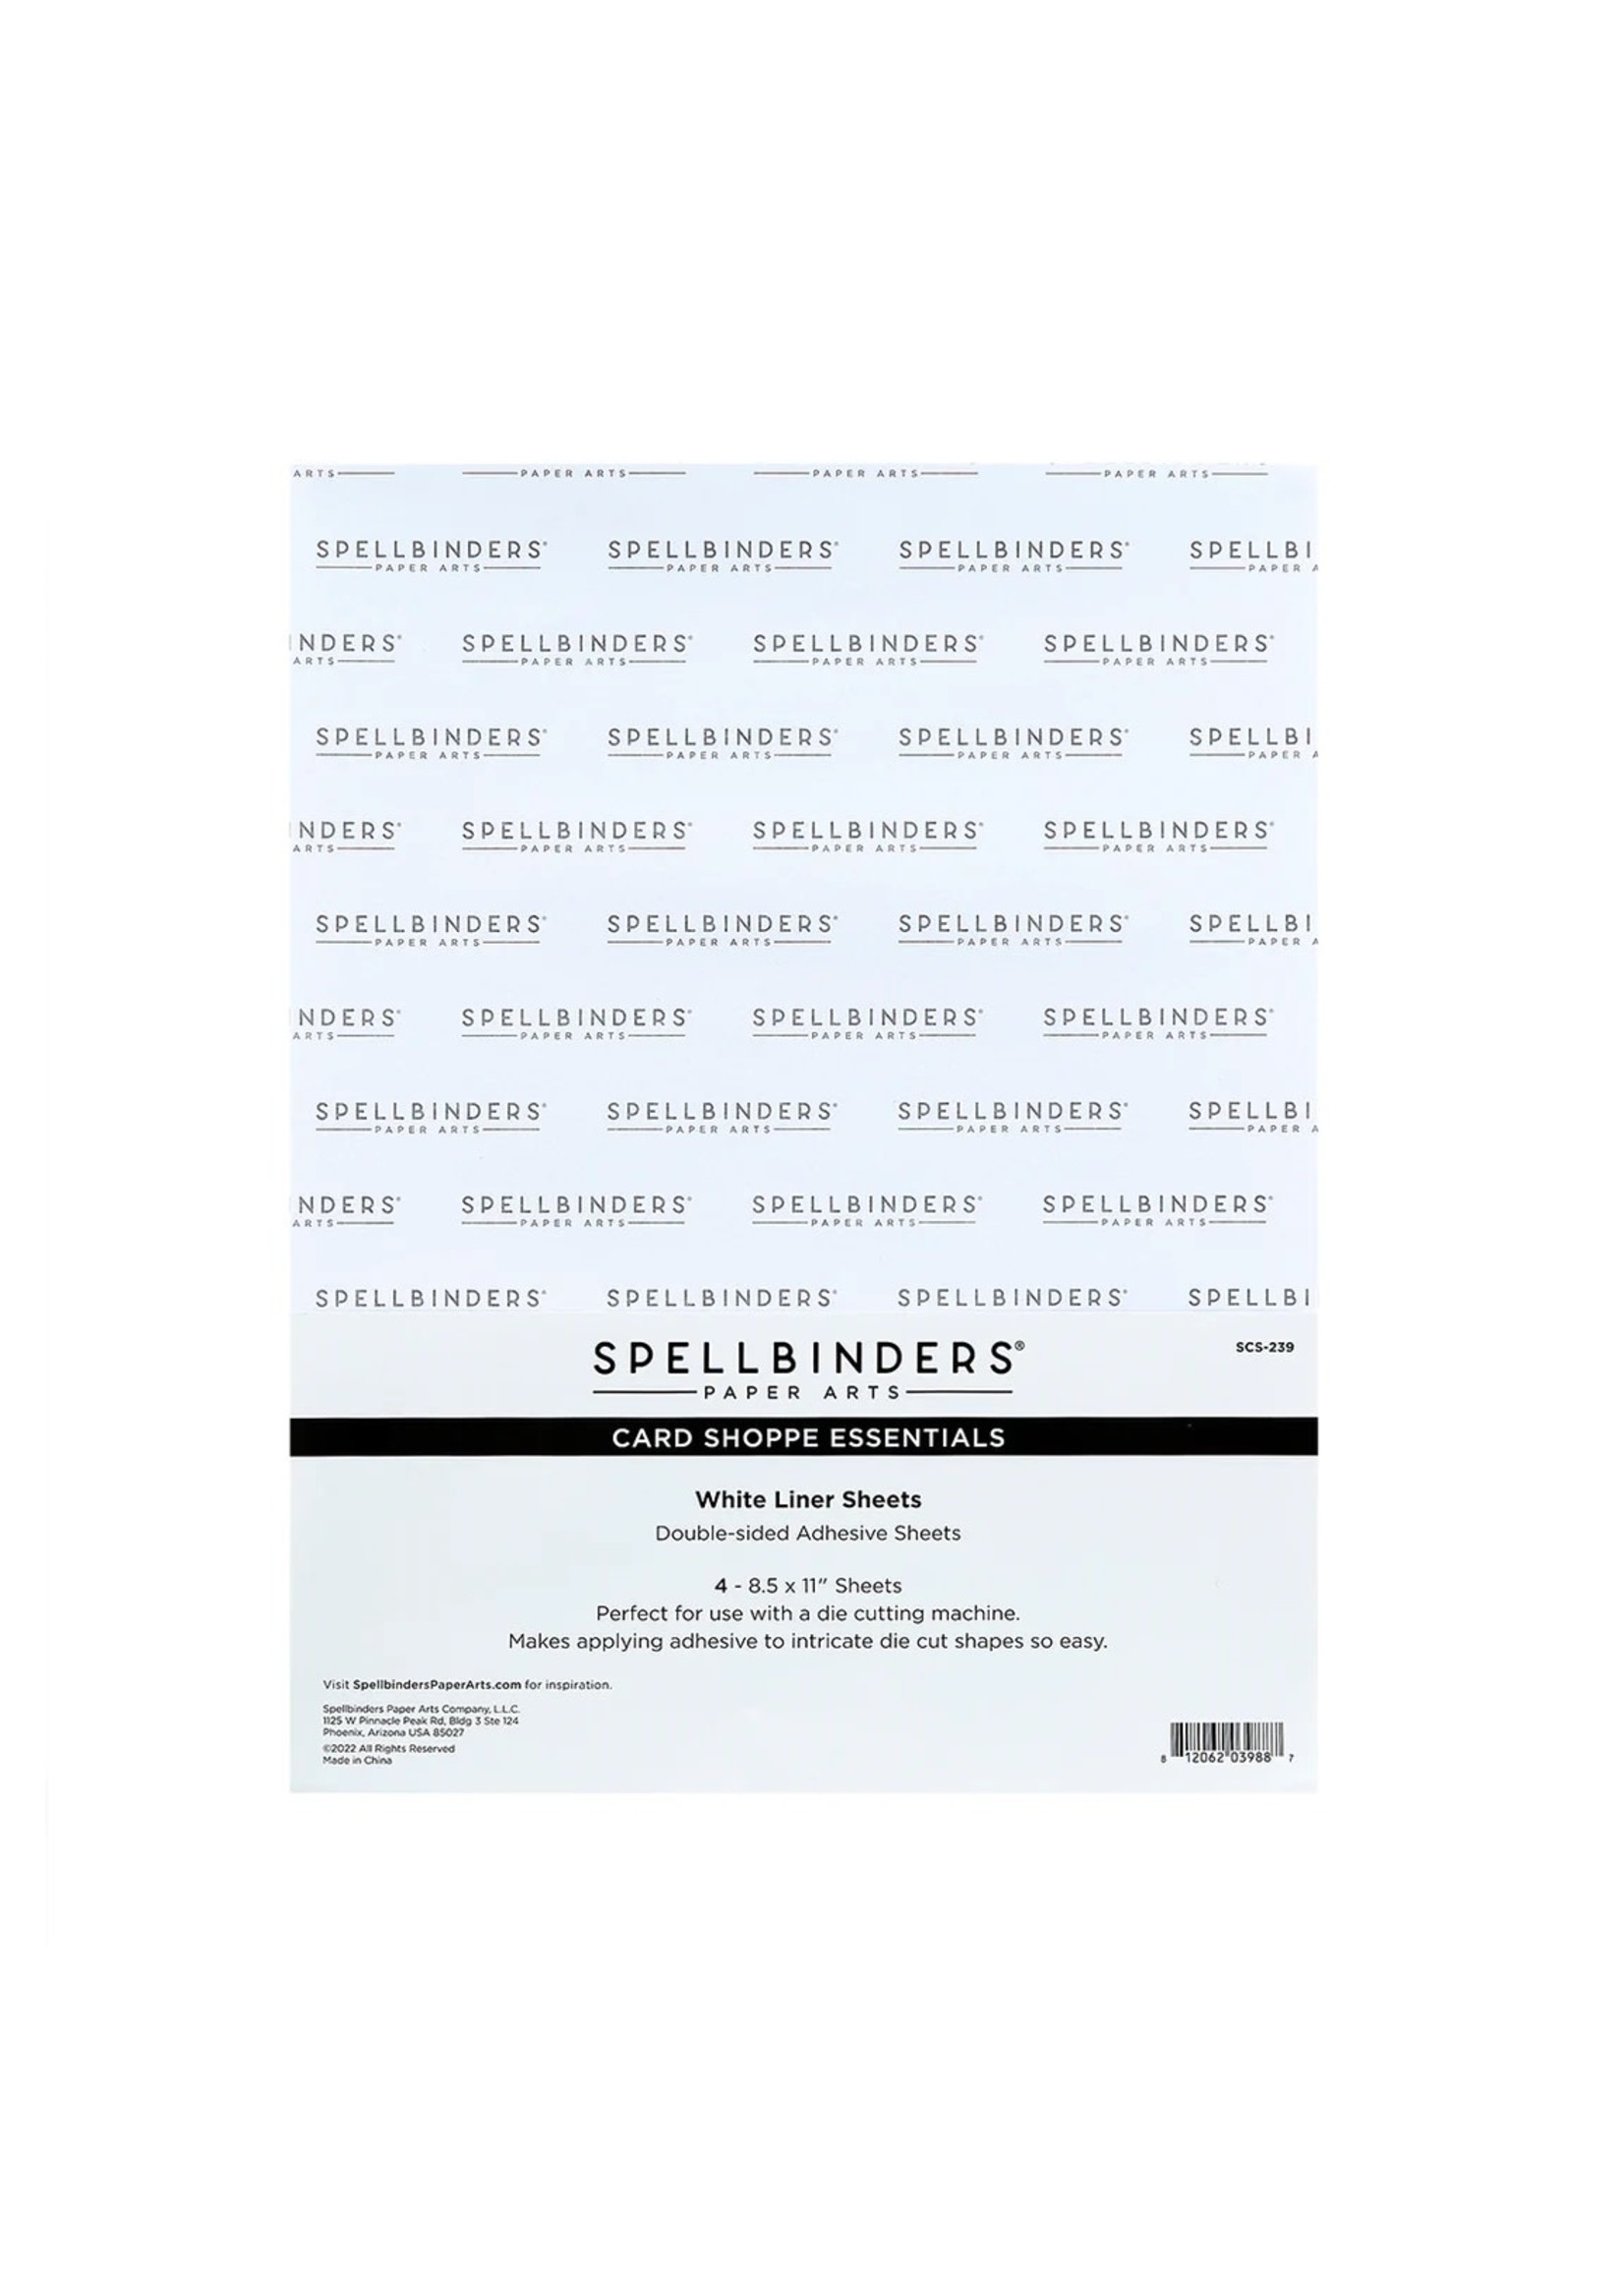 spellbinders Spellbinders White Liner Adhesive Sheets - 8.5" x 11" - 4 Pack